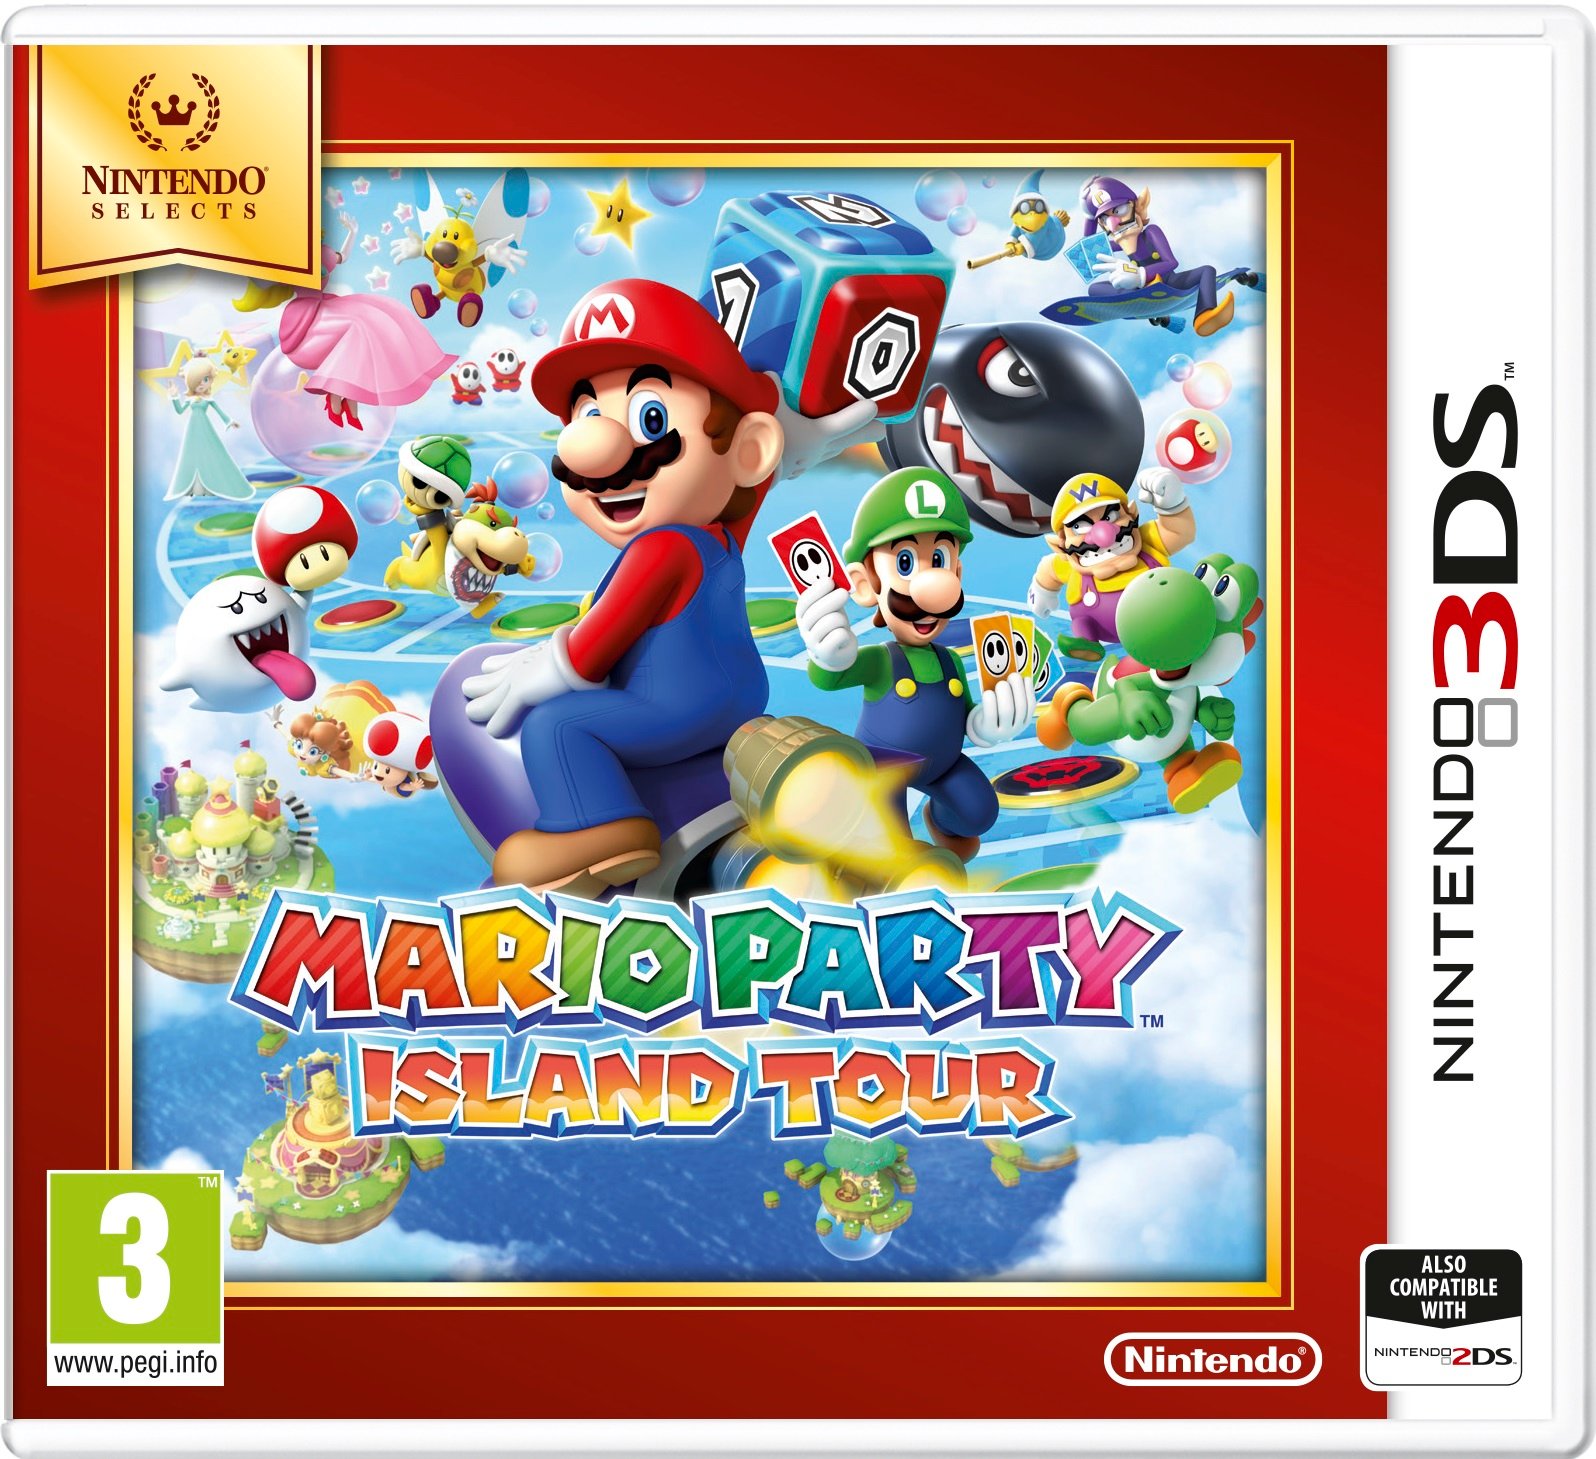 mario party island tour ebay download free